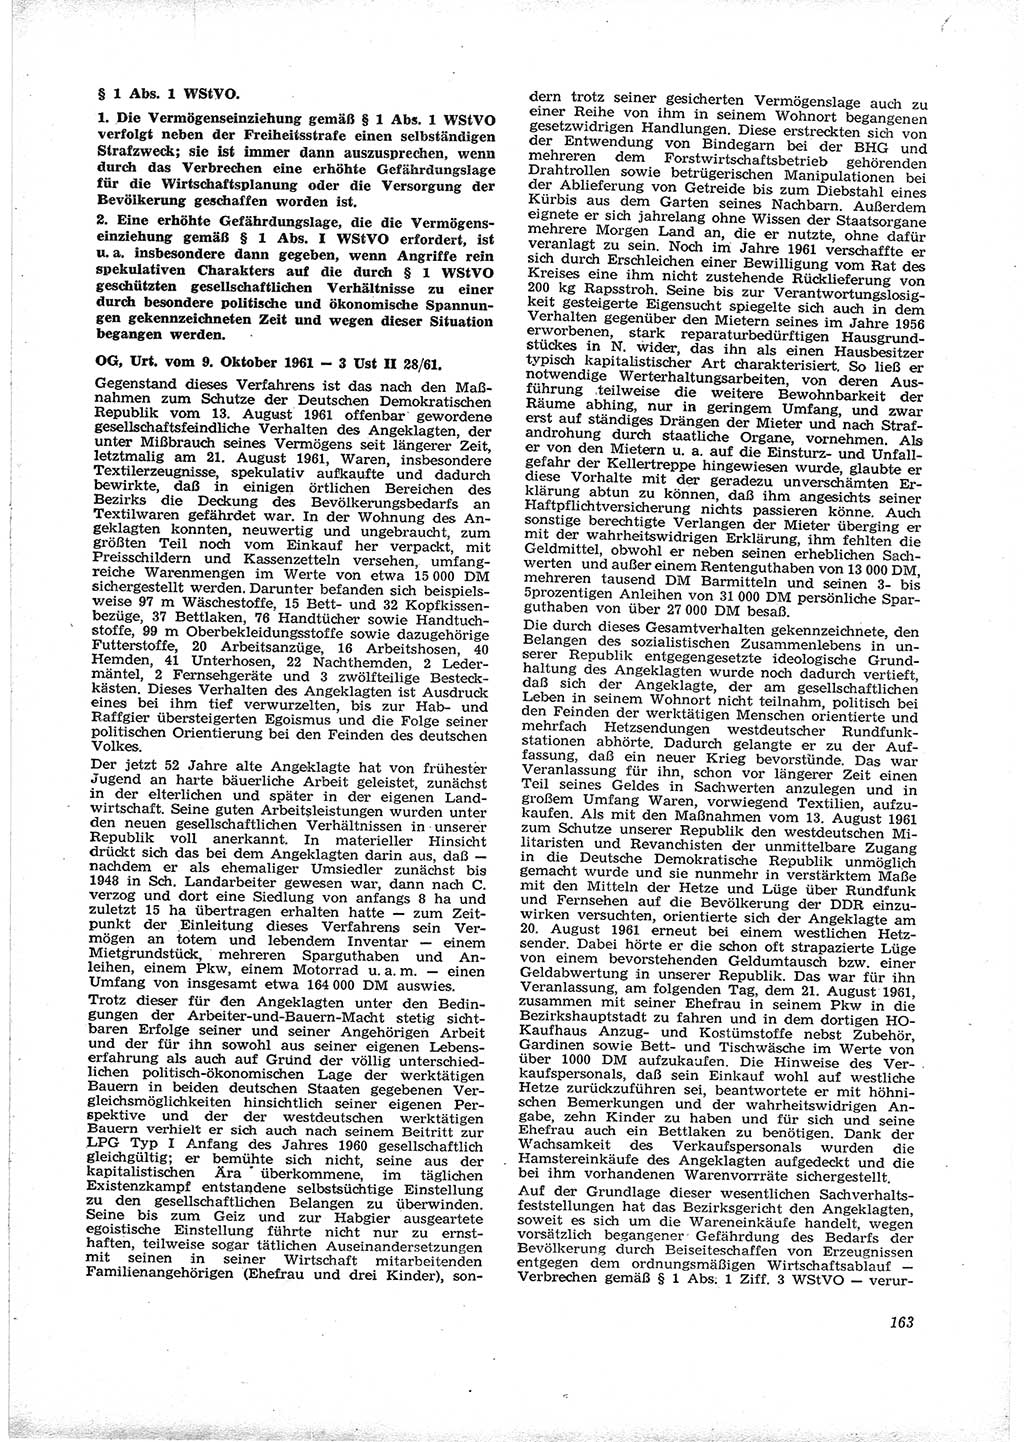 Neue Justiz (NJ), Zeitschrift für Recht und Rechtswissenschaft [Deutsche Demokratische Republik (DDR)], 16. Jahrgang 1962, Seite 163 (NJ DDR 1962, S. 163)